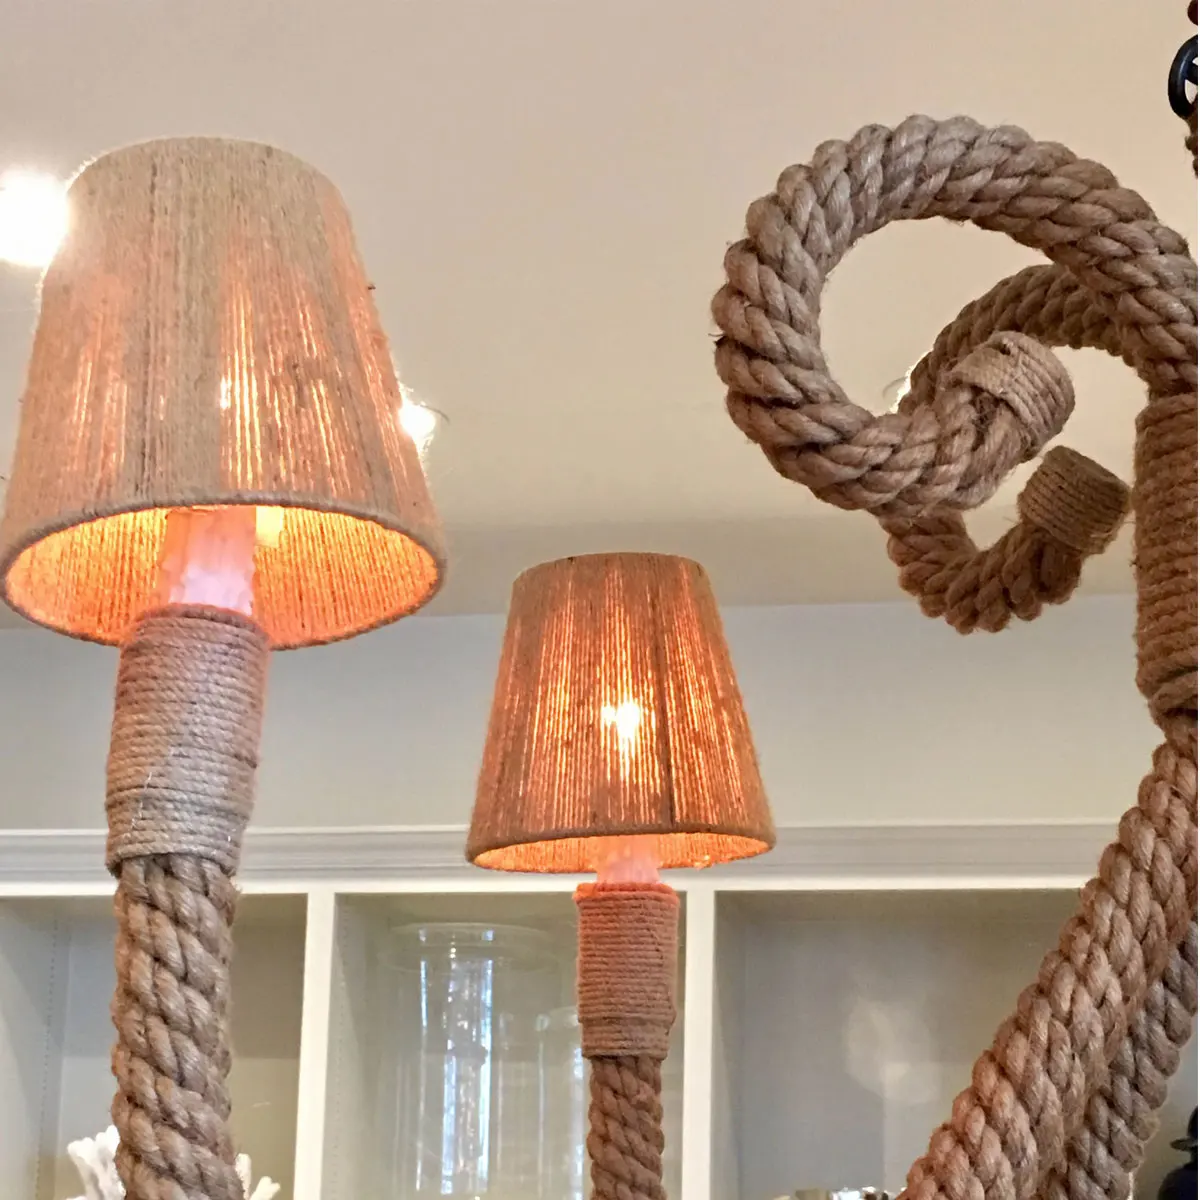 KIWARM 40 мм 3-40 м джутовые веревки шпагат натуральный пеньковый льняной шнур интерьер домашнего искусства Декор